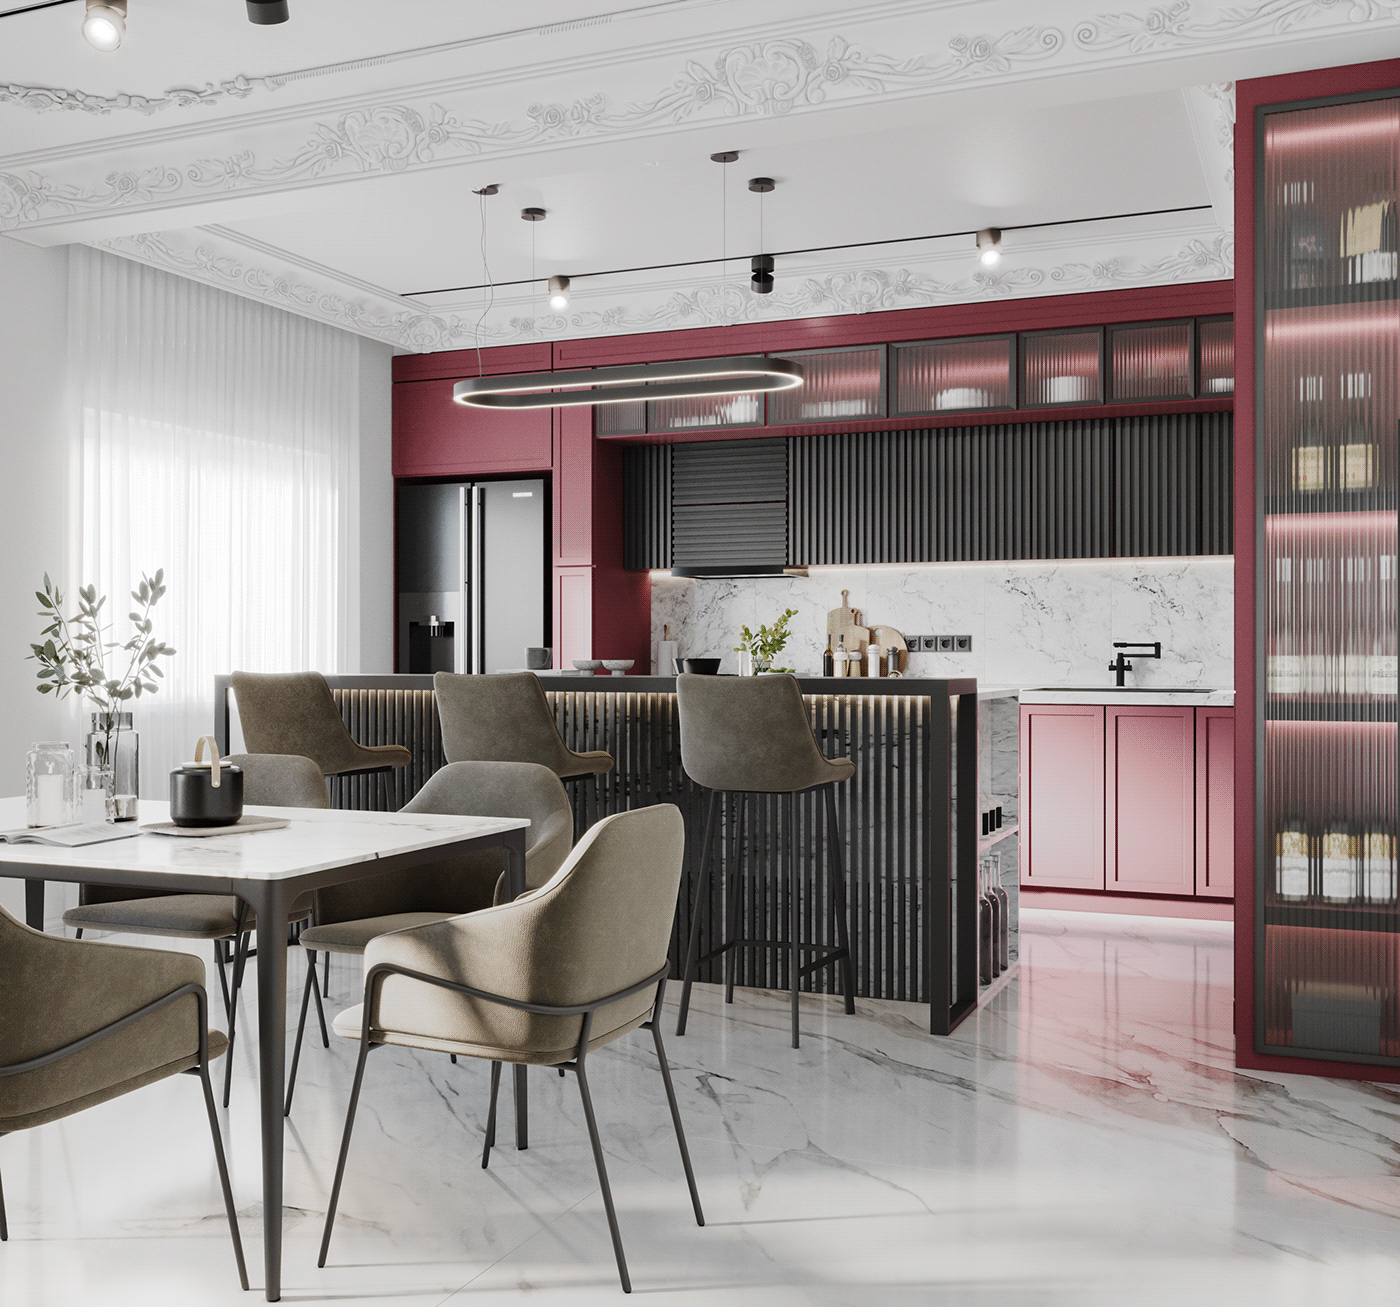 Bordeaux dining room interior design  kitchen KitchenStudio living room modern Render visualization